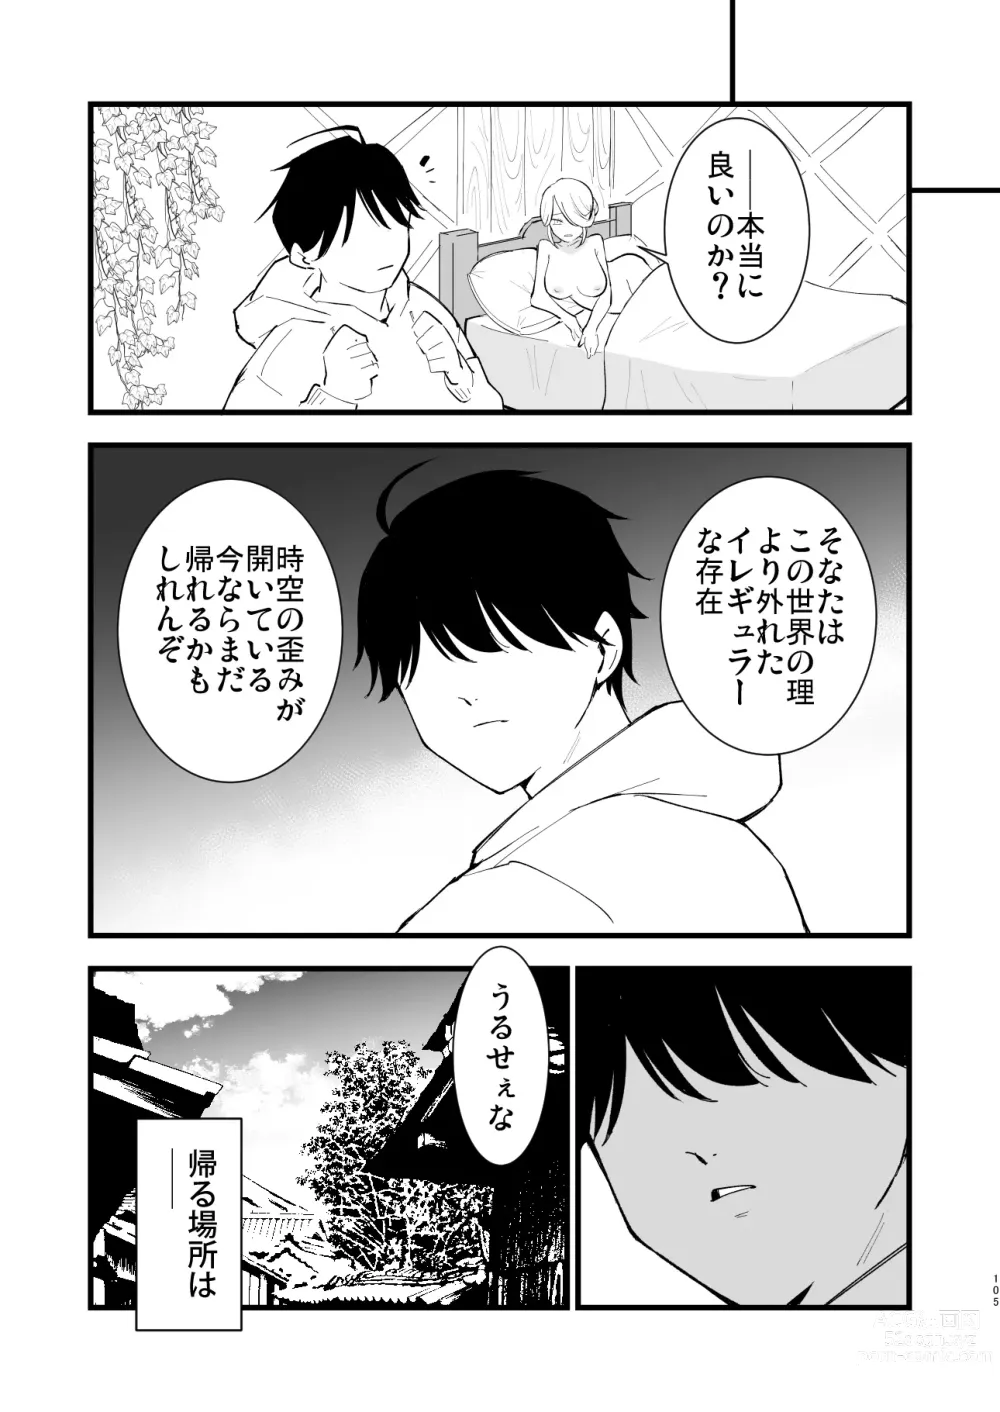 Page 105 of doujinshi Hisui Tensei-roku Soushuuhen